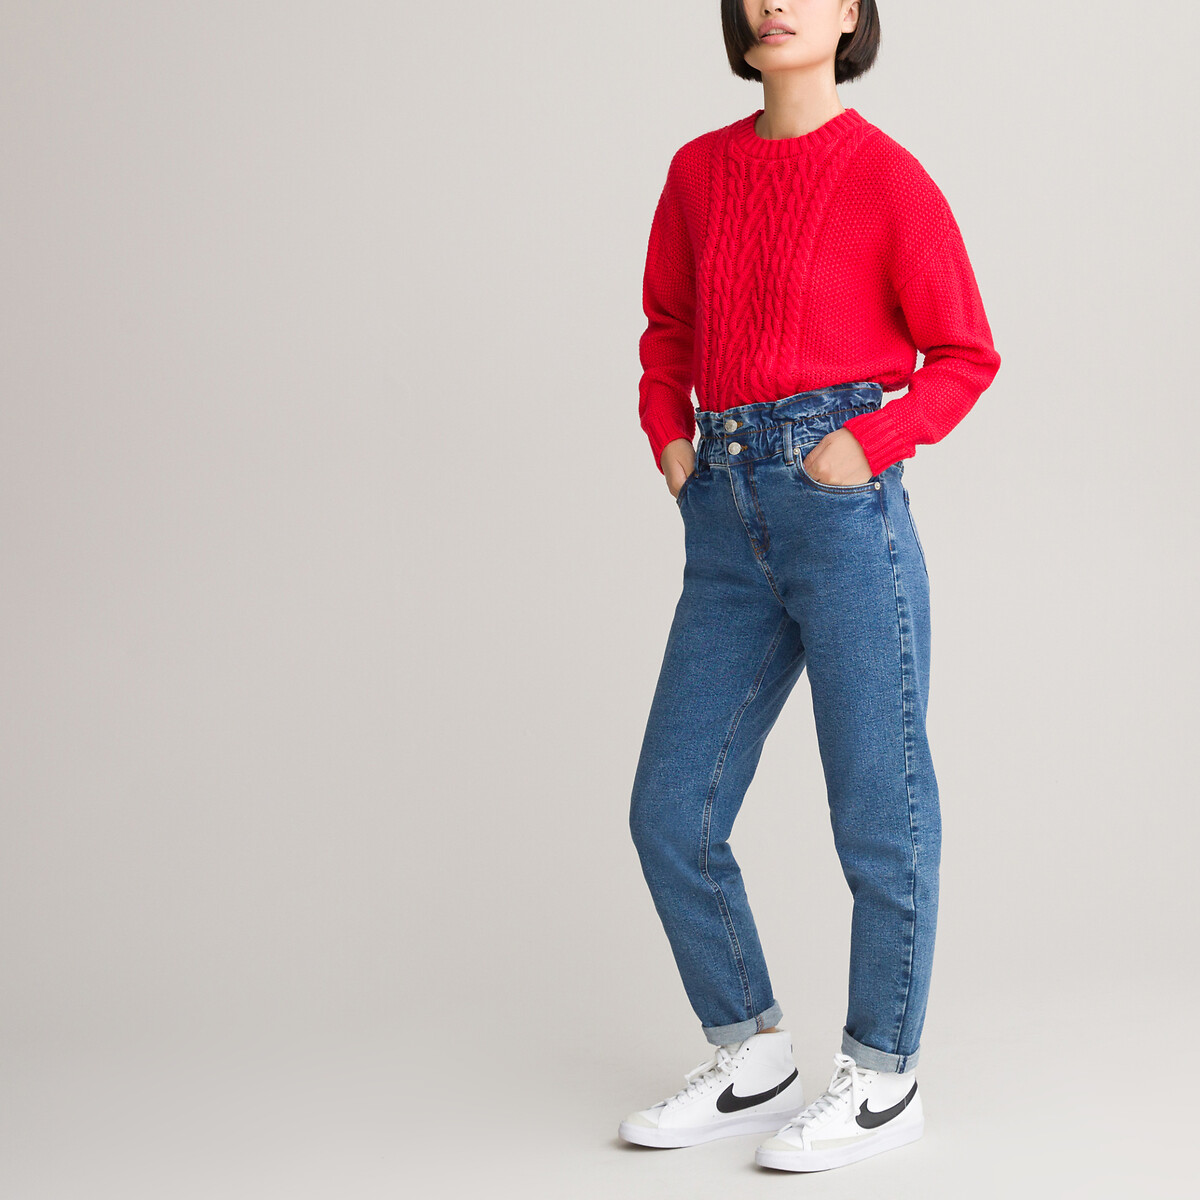 Пуловер LaRedoute С круглым вырезом из плотного трикотажа 10-18 лет 14 лет - 156 см красный, размер 14 лет - 156 см - фото 2